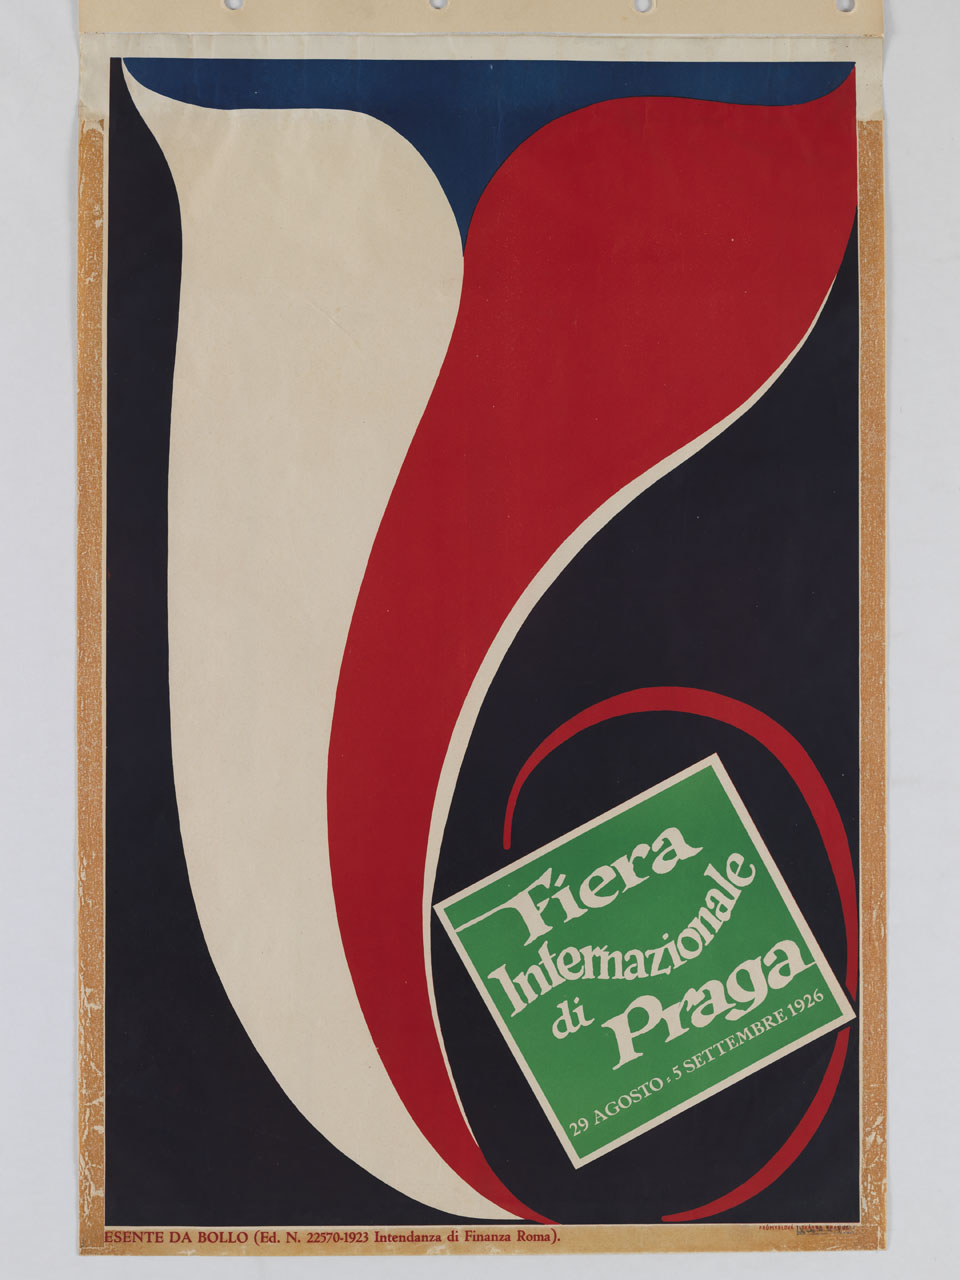 stendardo con i colori della bandiera cecoslovacca si arriccia intorno alla pubblicità di una fiera (manifesto) - ambito praghese (sec. XX)